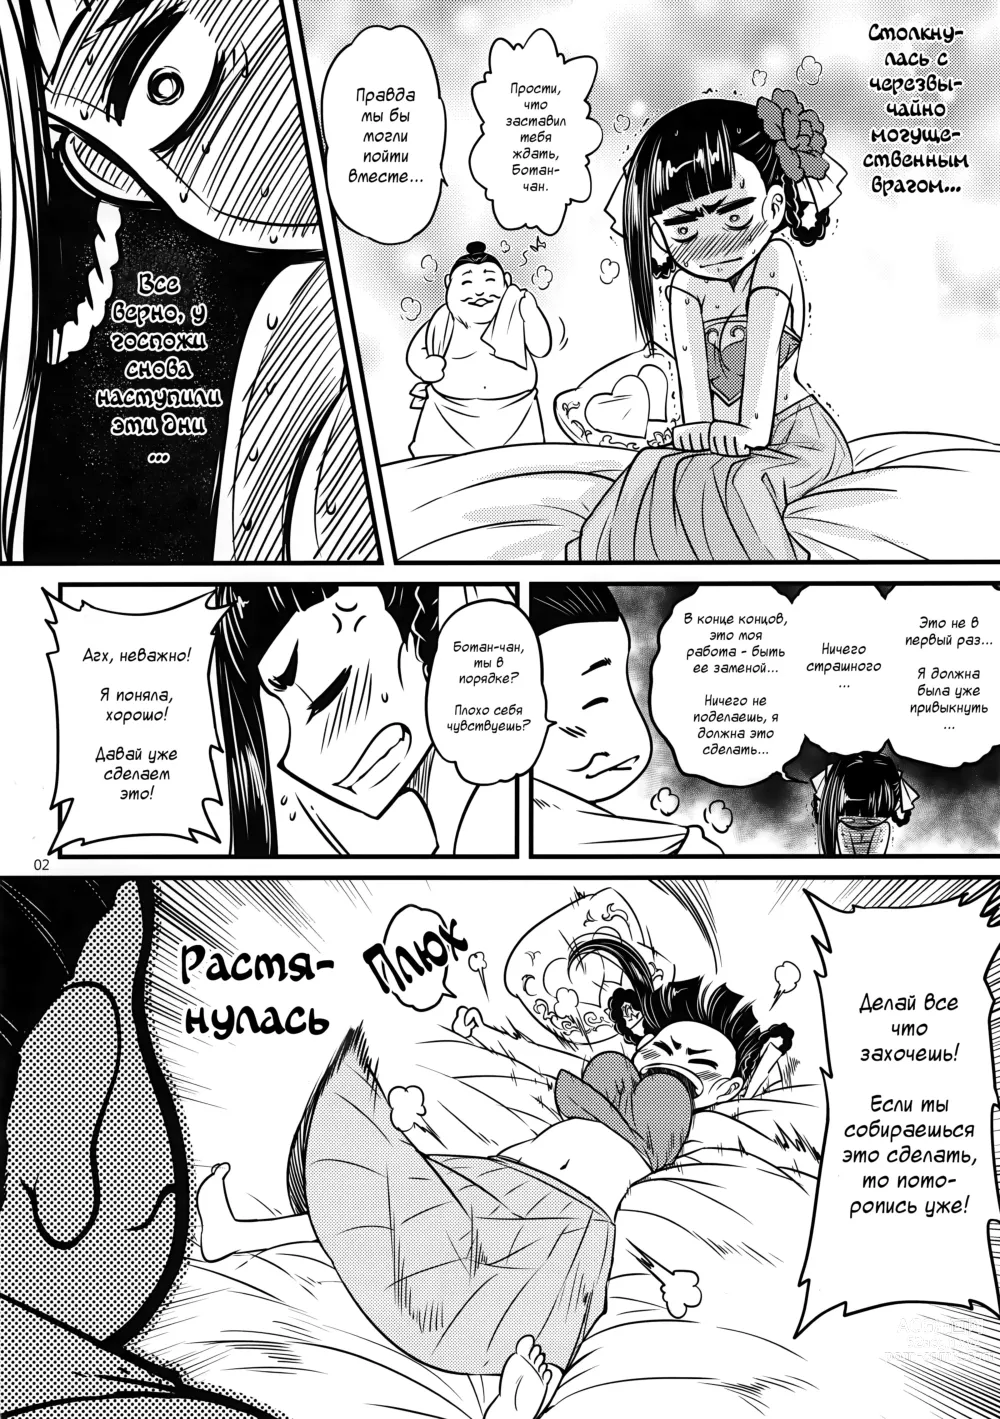 Page 3 of doujinshi Hyakkasou3 <<Hekigan Rasetsu no Gyakushuu!>>